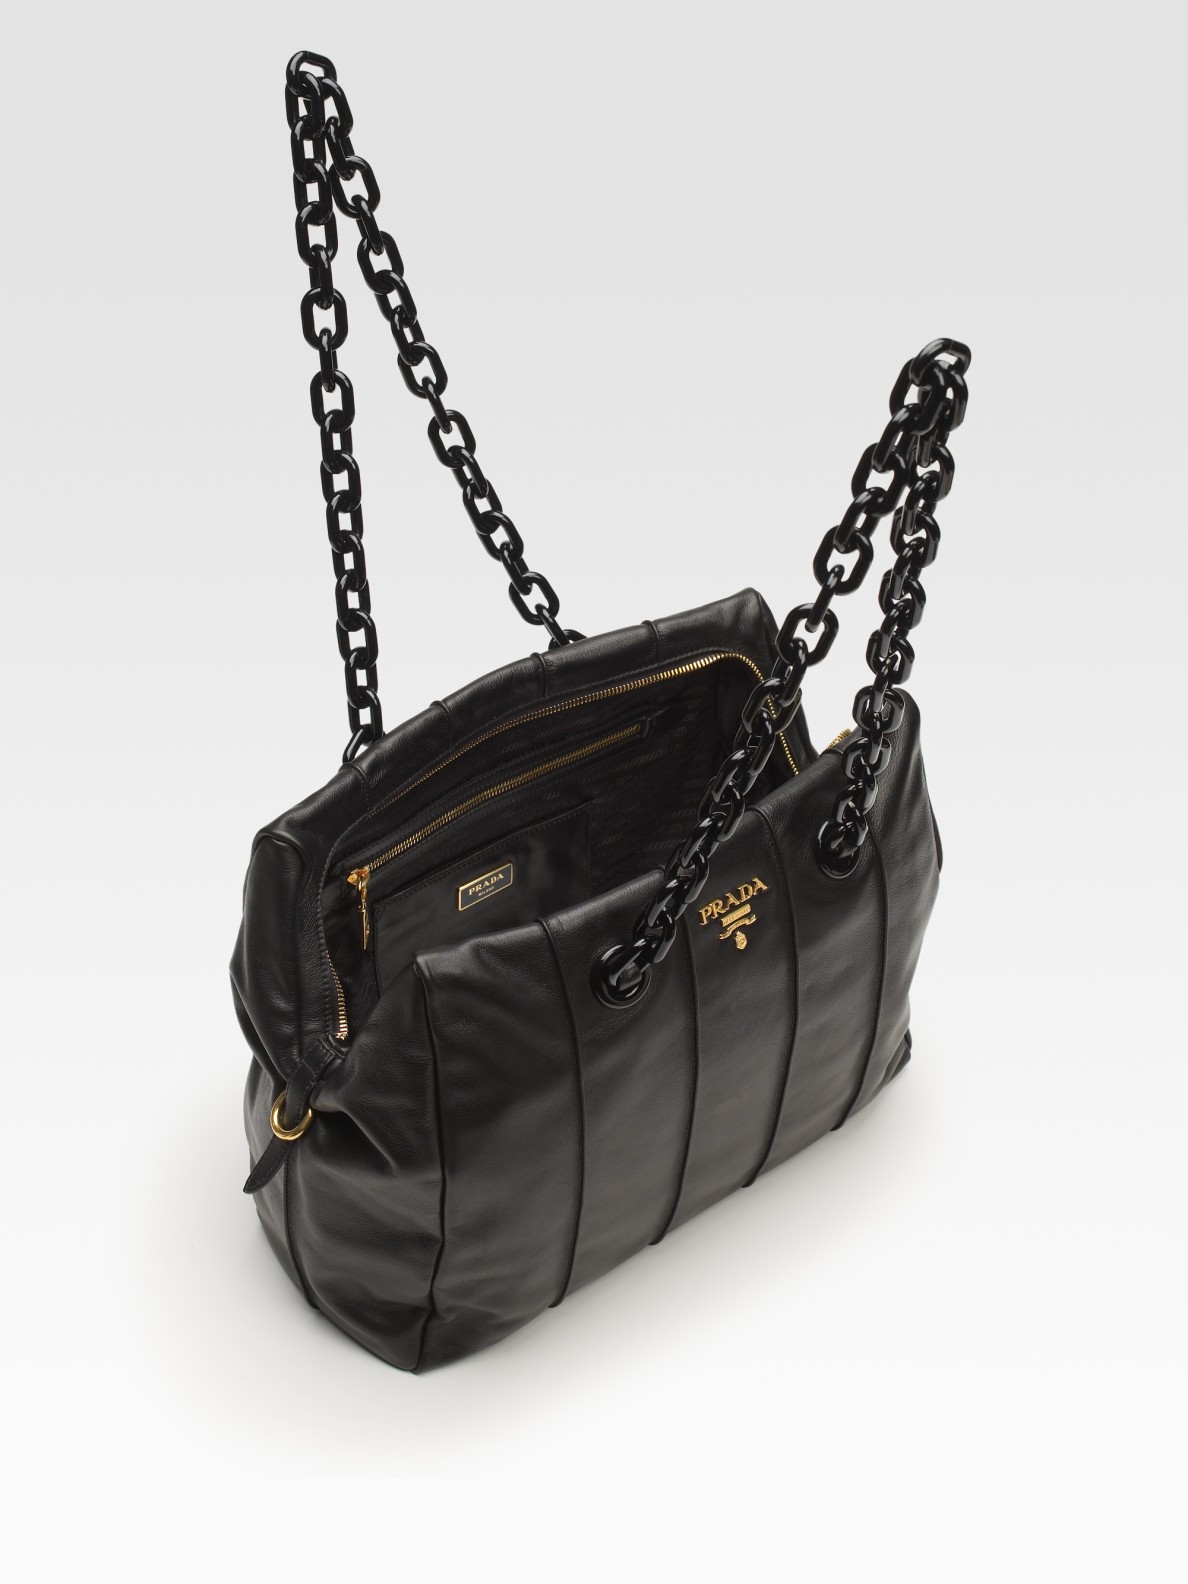 aaa replica handbags suppliers - Prada Soft Calf Chain Bag in Black | Lyst